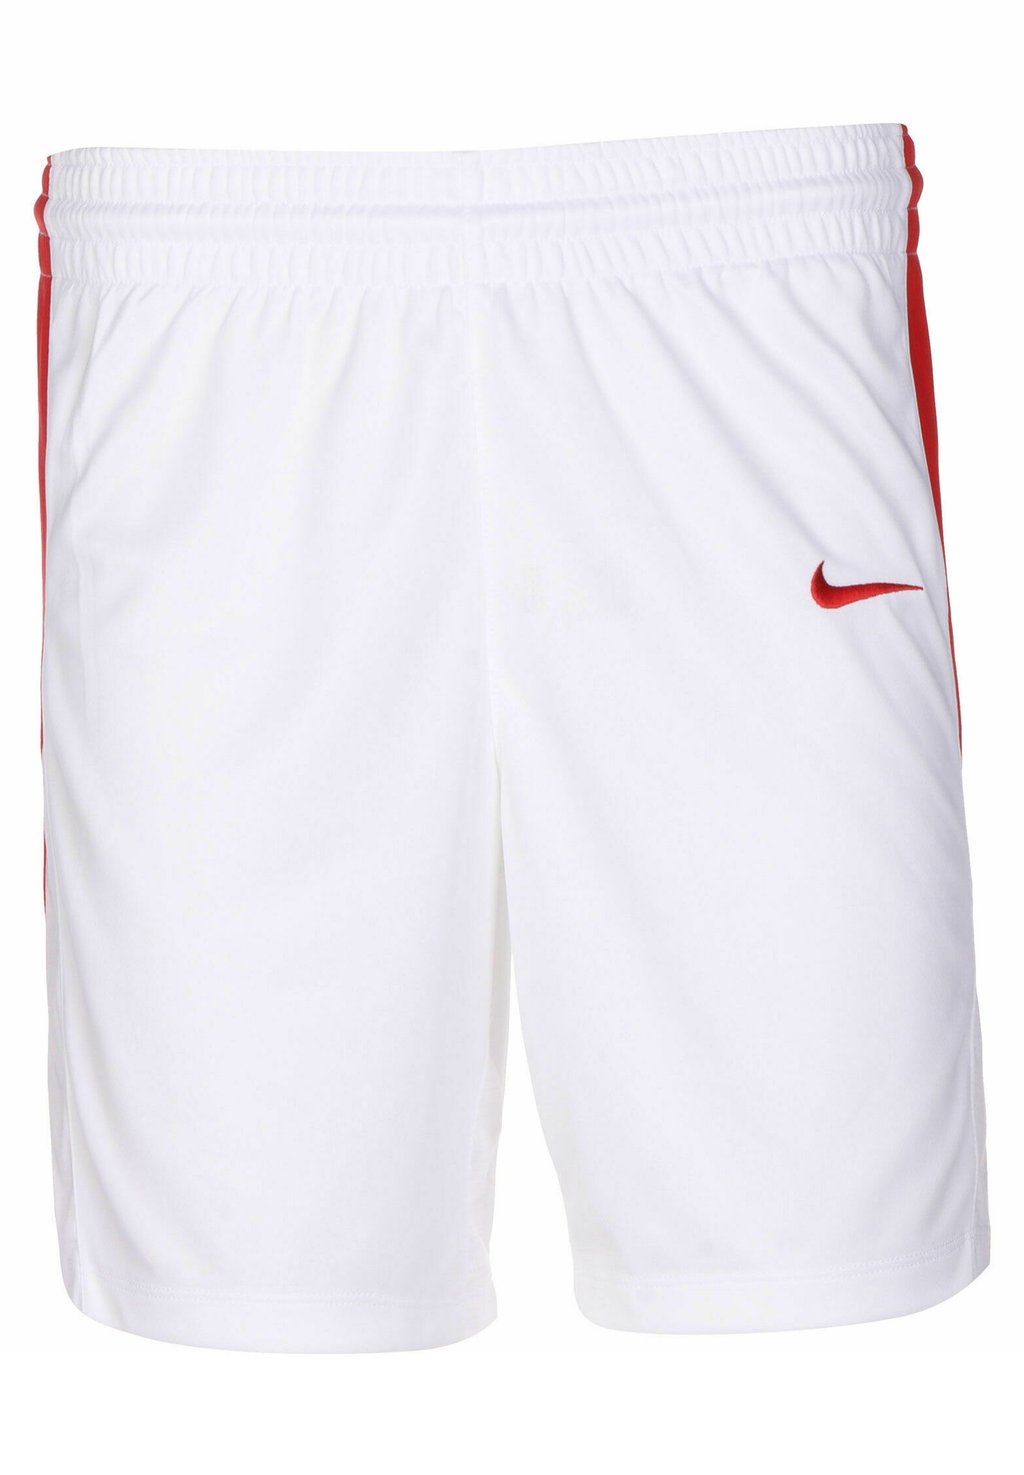 Спортивные шорты BASKETBALL Nike, цвет white university red спортивные шорты df unisex nike цвет university red white